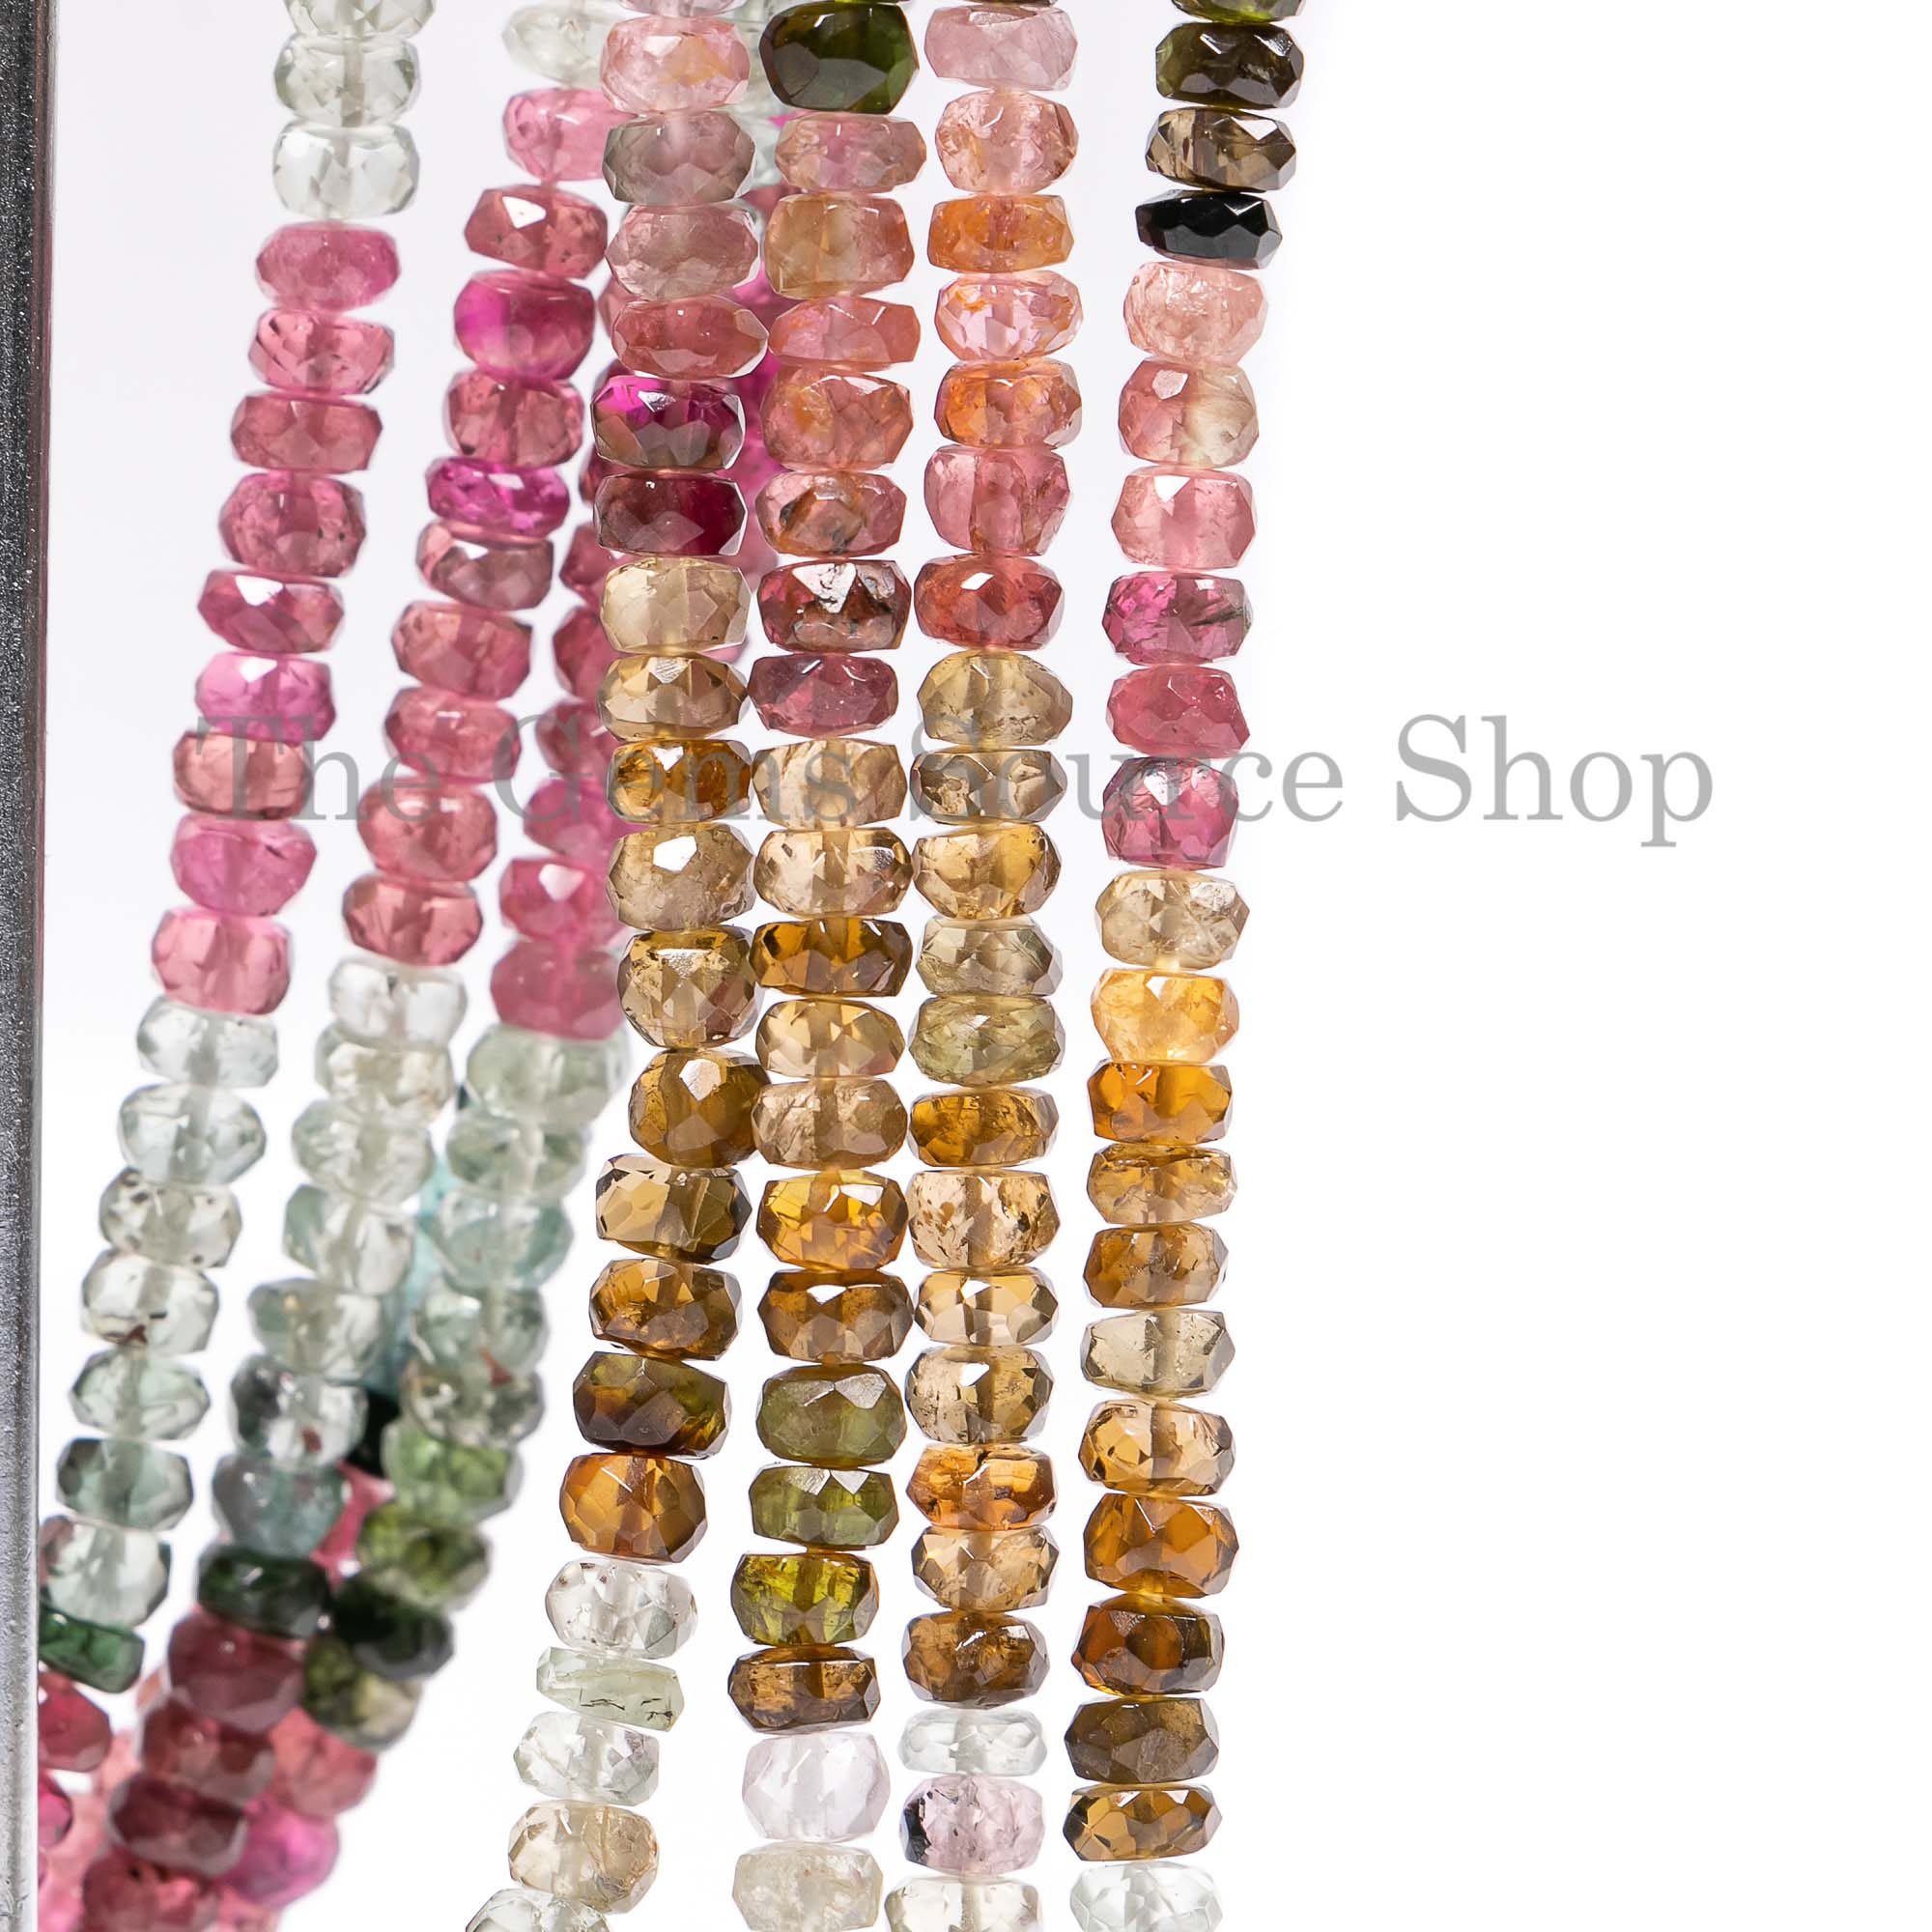 Natural Multi Tourmaline Beads, Tourmaline Faceted Beads, Tourmaline Rondelle Shape Beads, Gemstone Beads